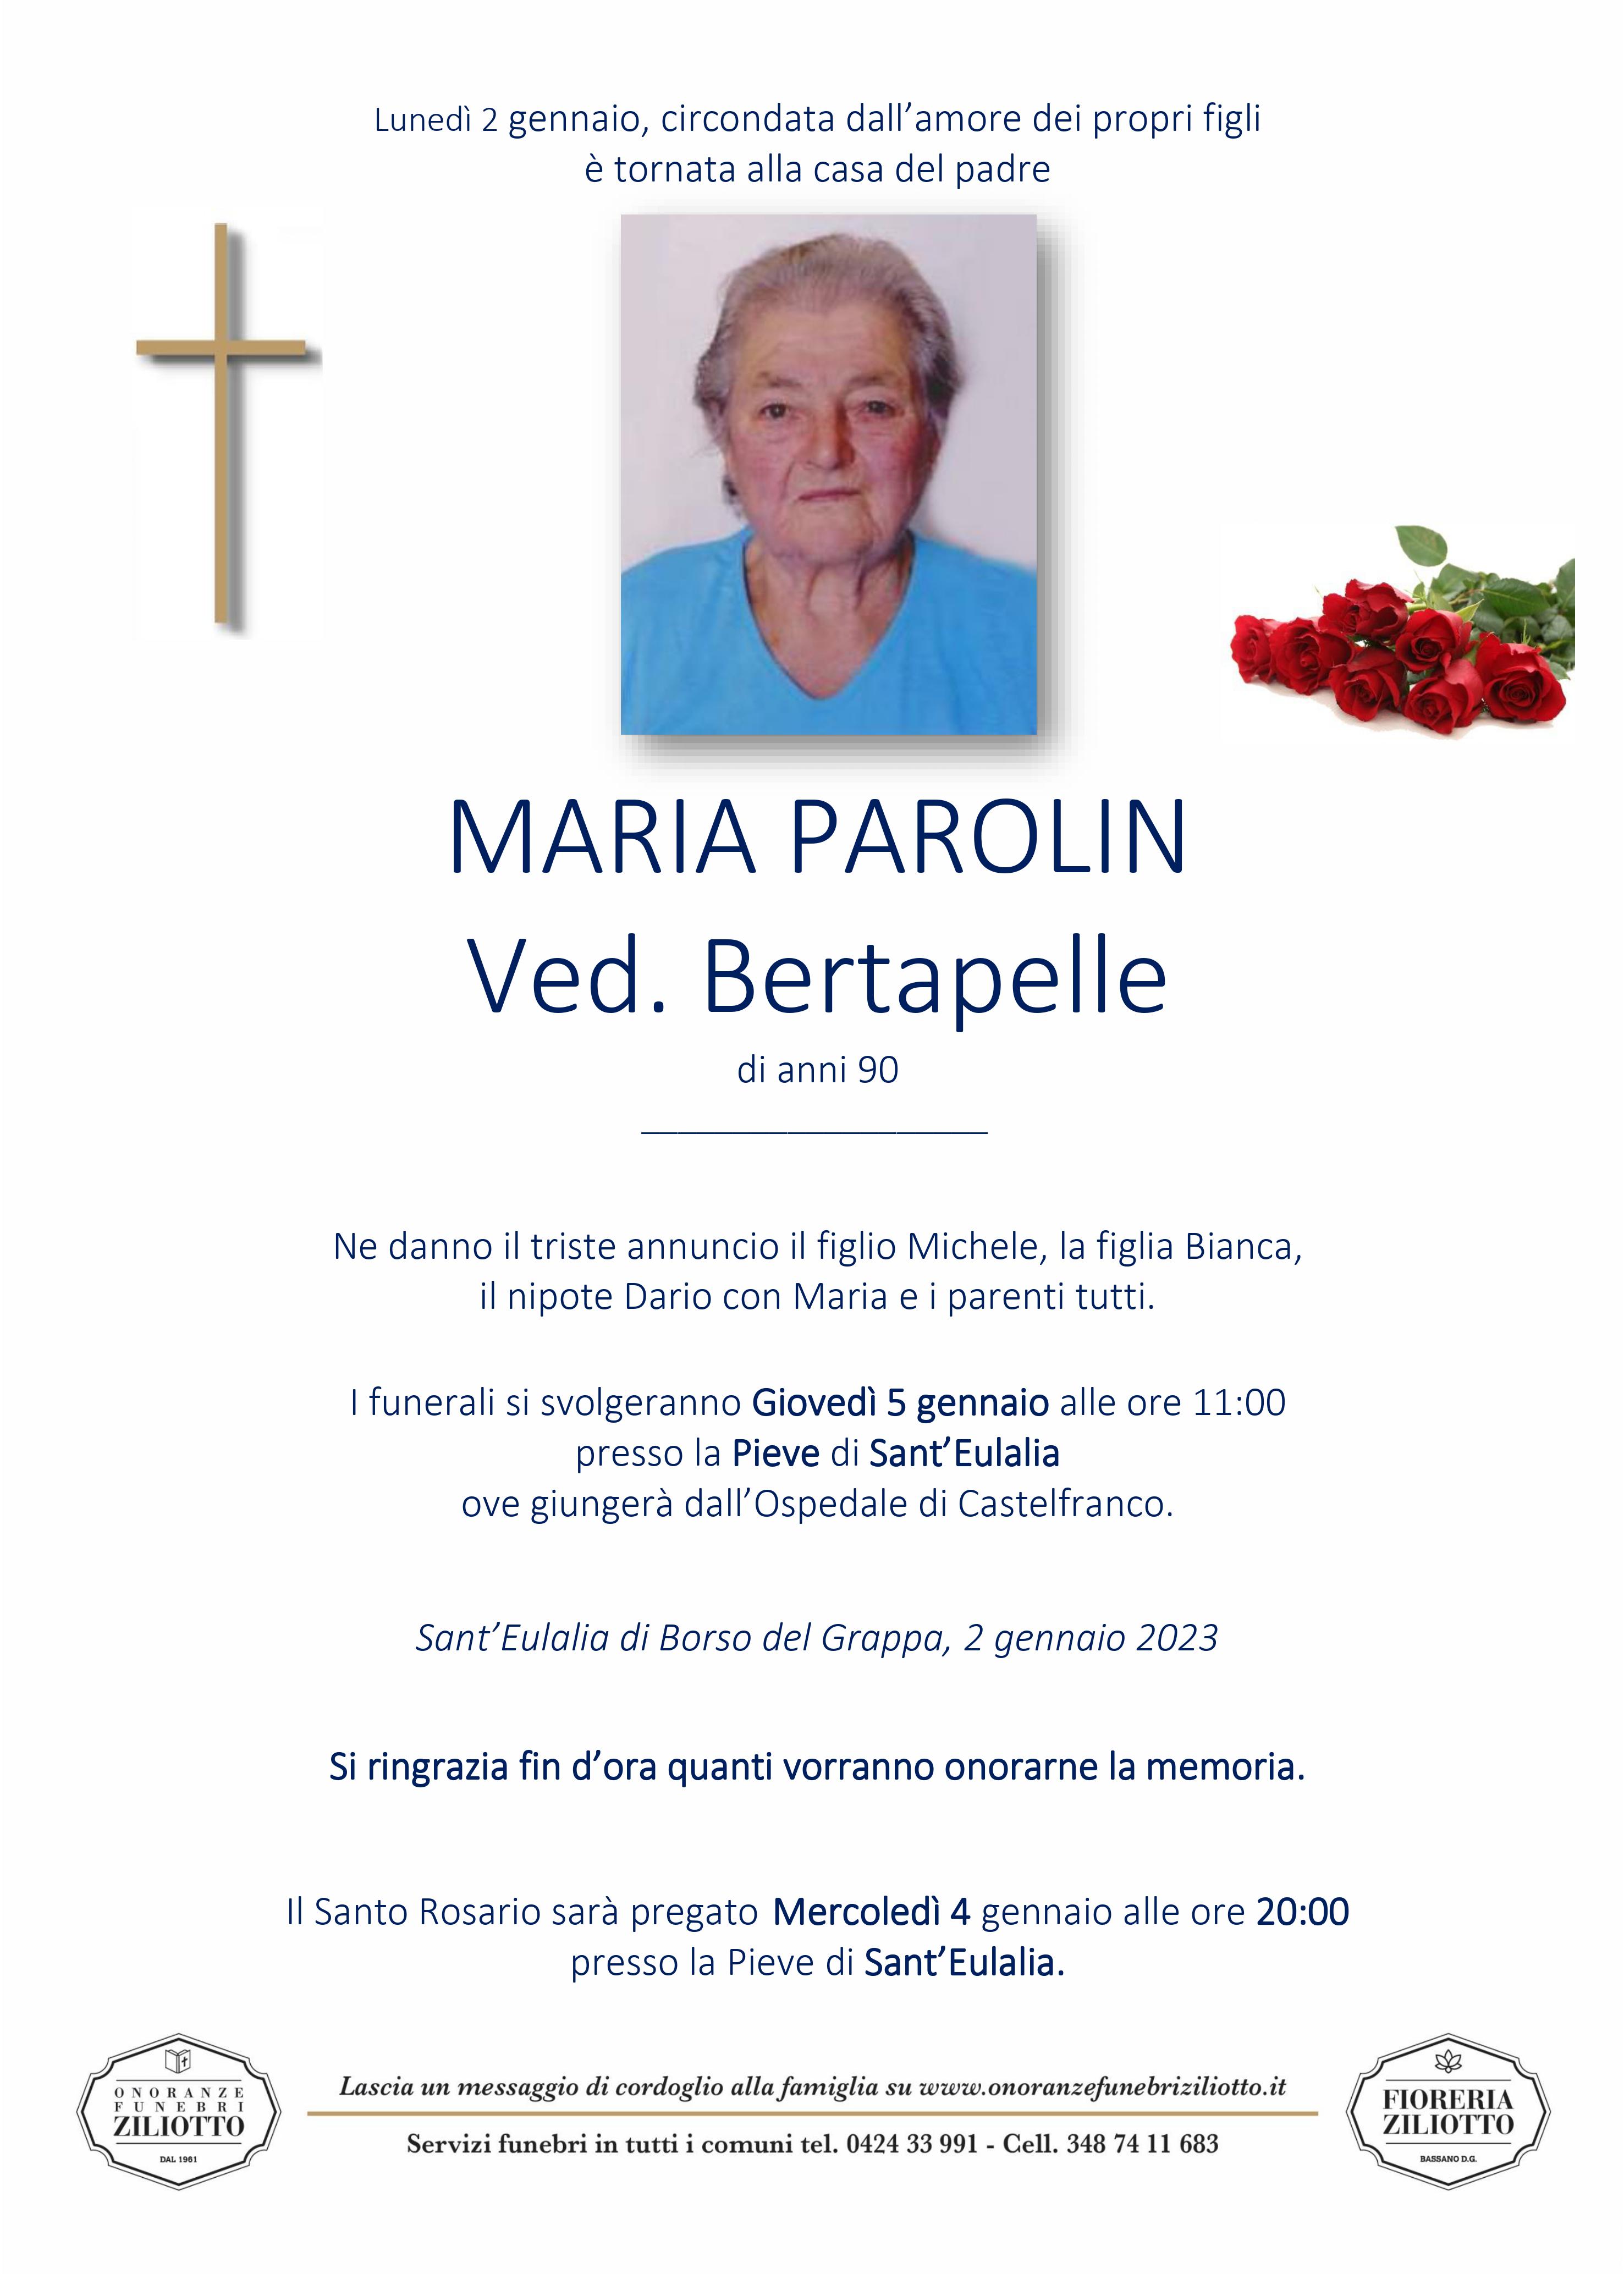 Maria Parolin - 90 anni - Sant' Eulalia